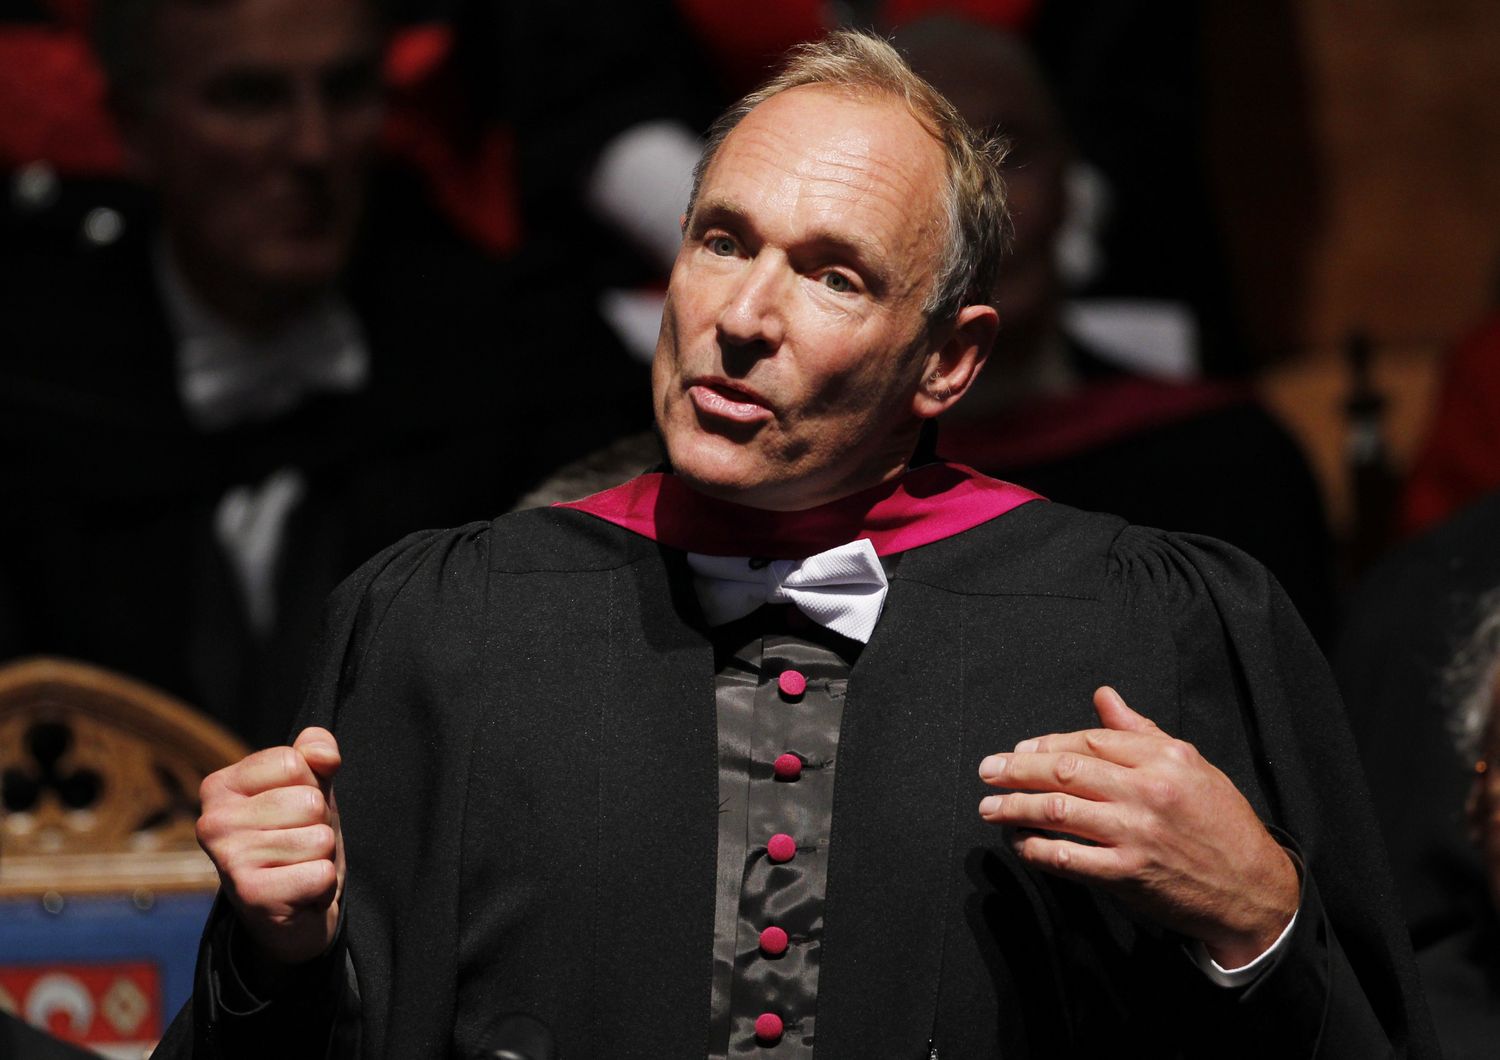 &nbsp;Tim Berners-Lee